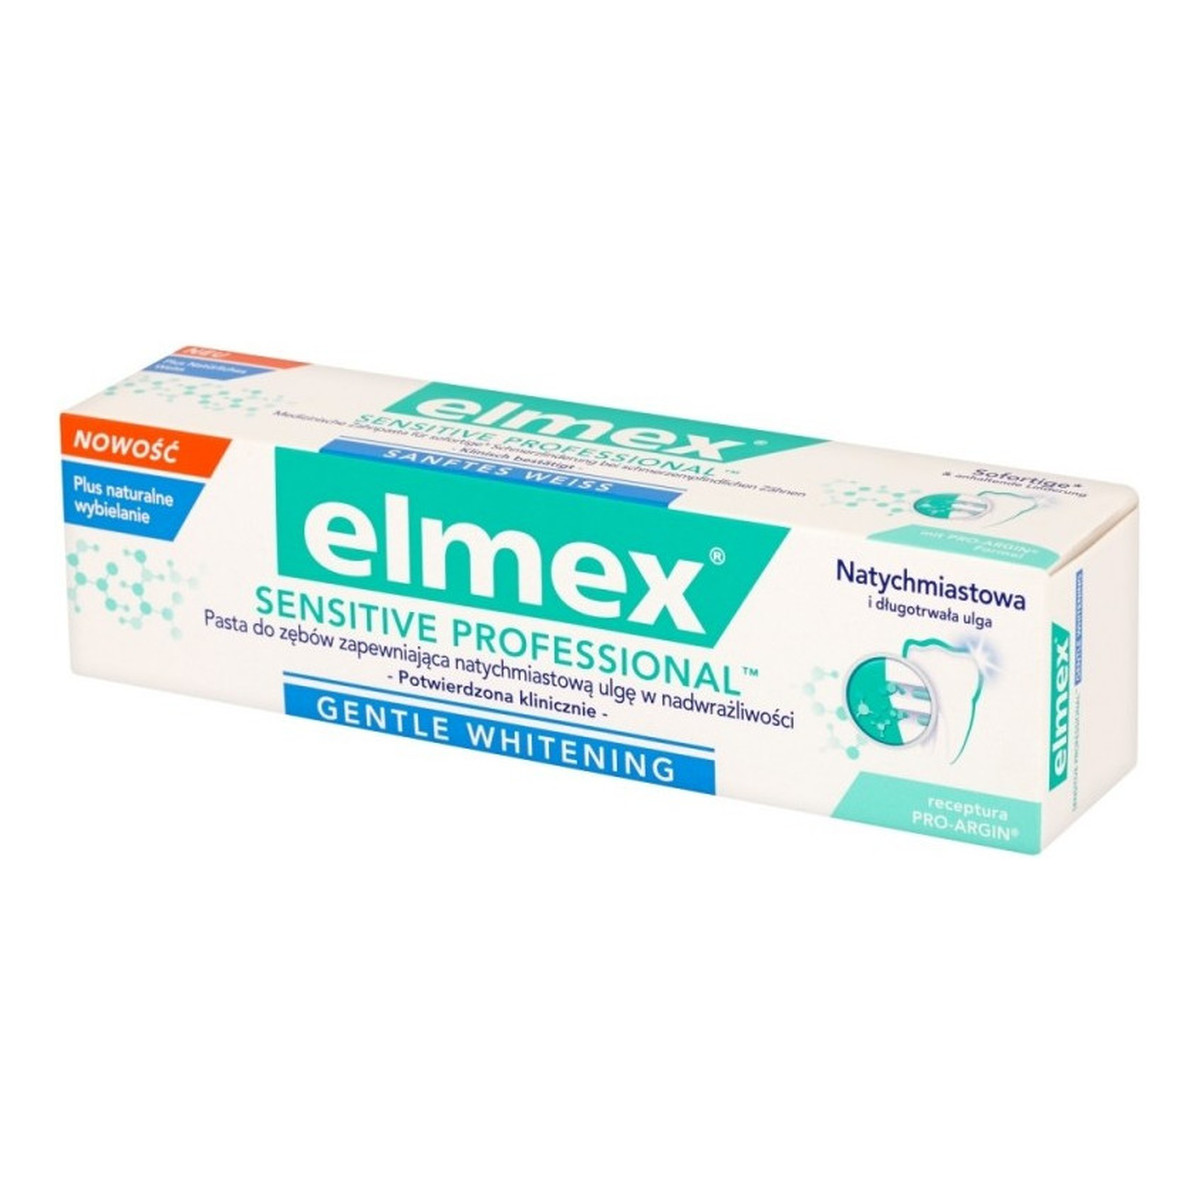 elmex Sensitive Professional Wybielająca Pasta Do Zębów Gentle Whitening 75ml